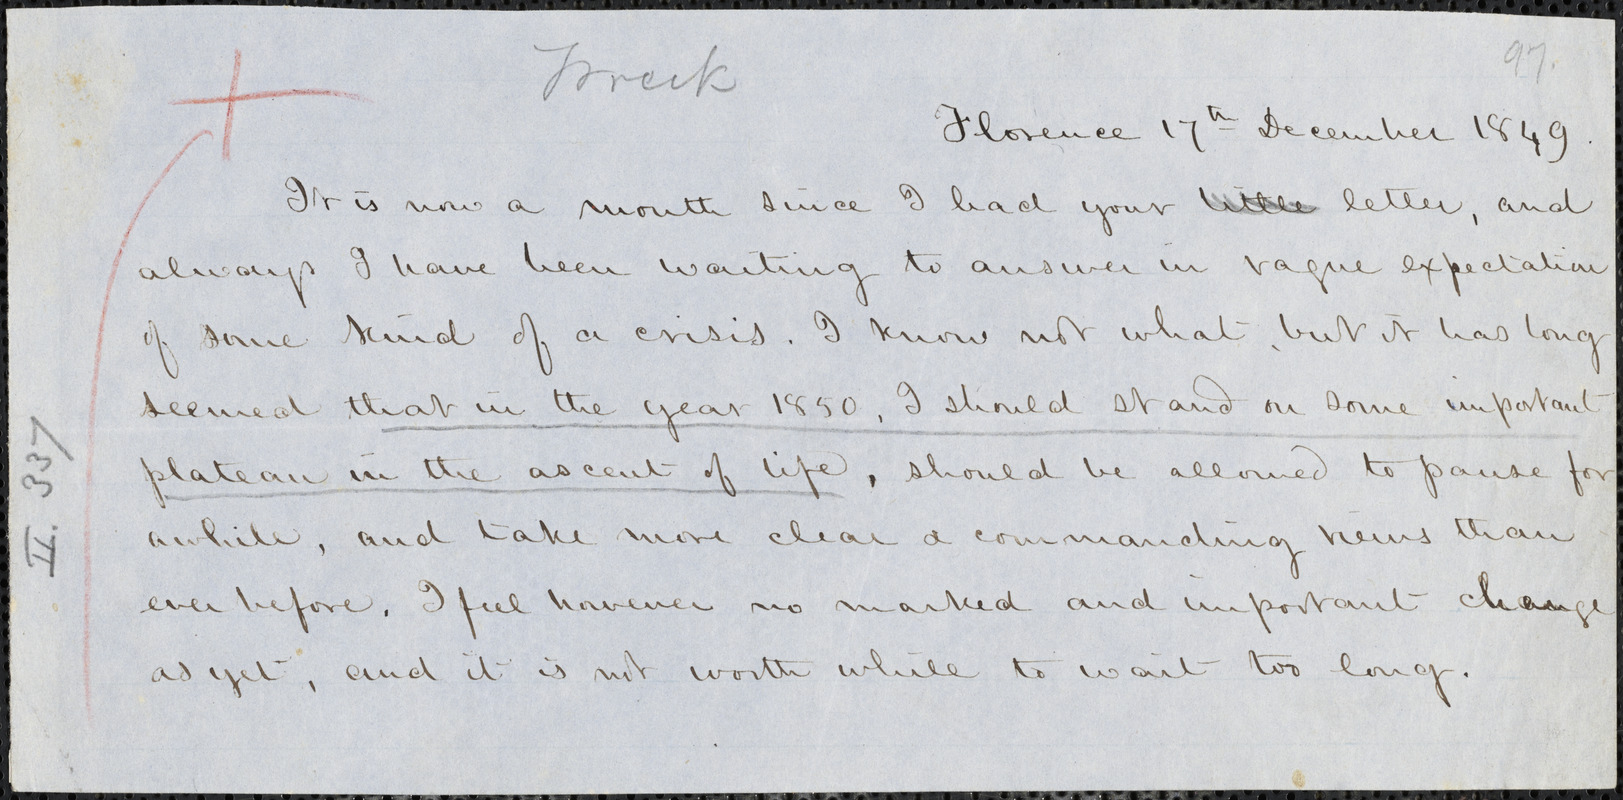 Margaret Fuller manuscript (copy) fragment, Florence, 17 December 1849